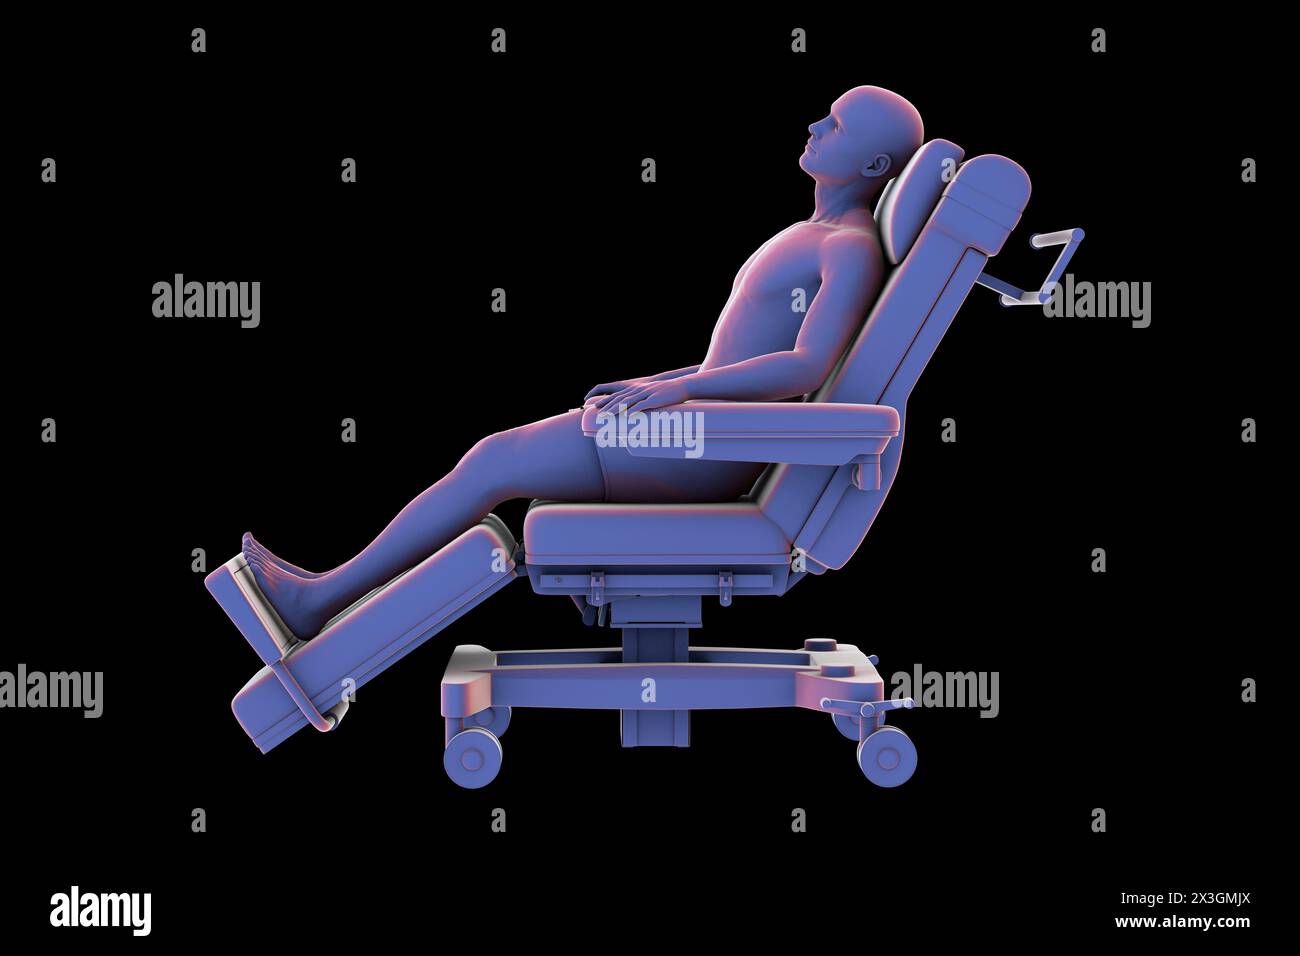 Abbildung eines Patienten auf einem medizinischen Lehnstuhl als Symbol für die Mobilität und den Transport des Patienten in einer klinischen Umgebung. Stockfoto